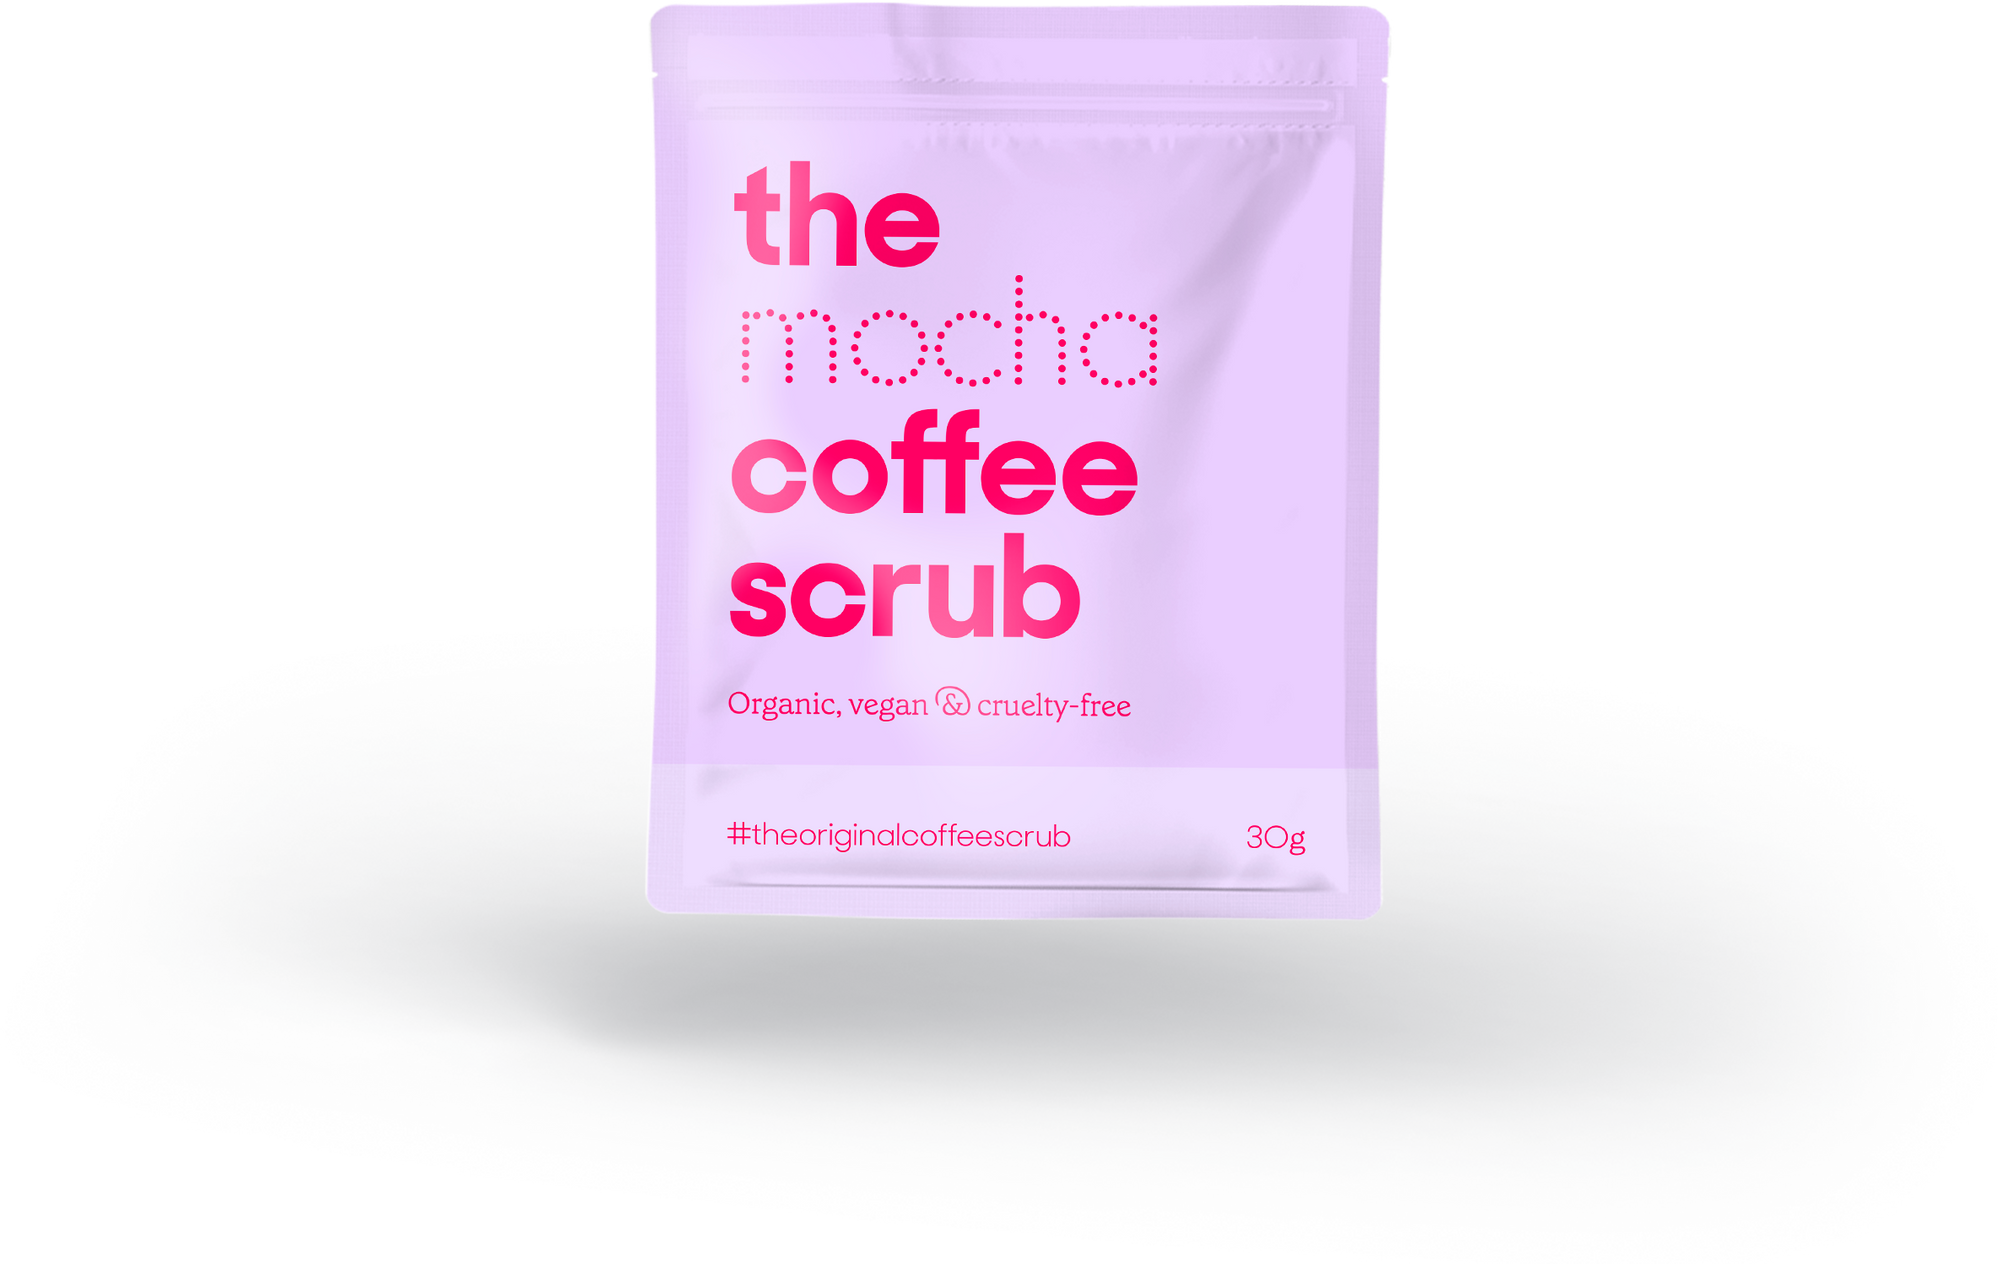 Mocha Coffee Scrub - The Coffee Scrub